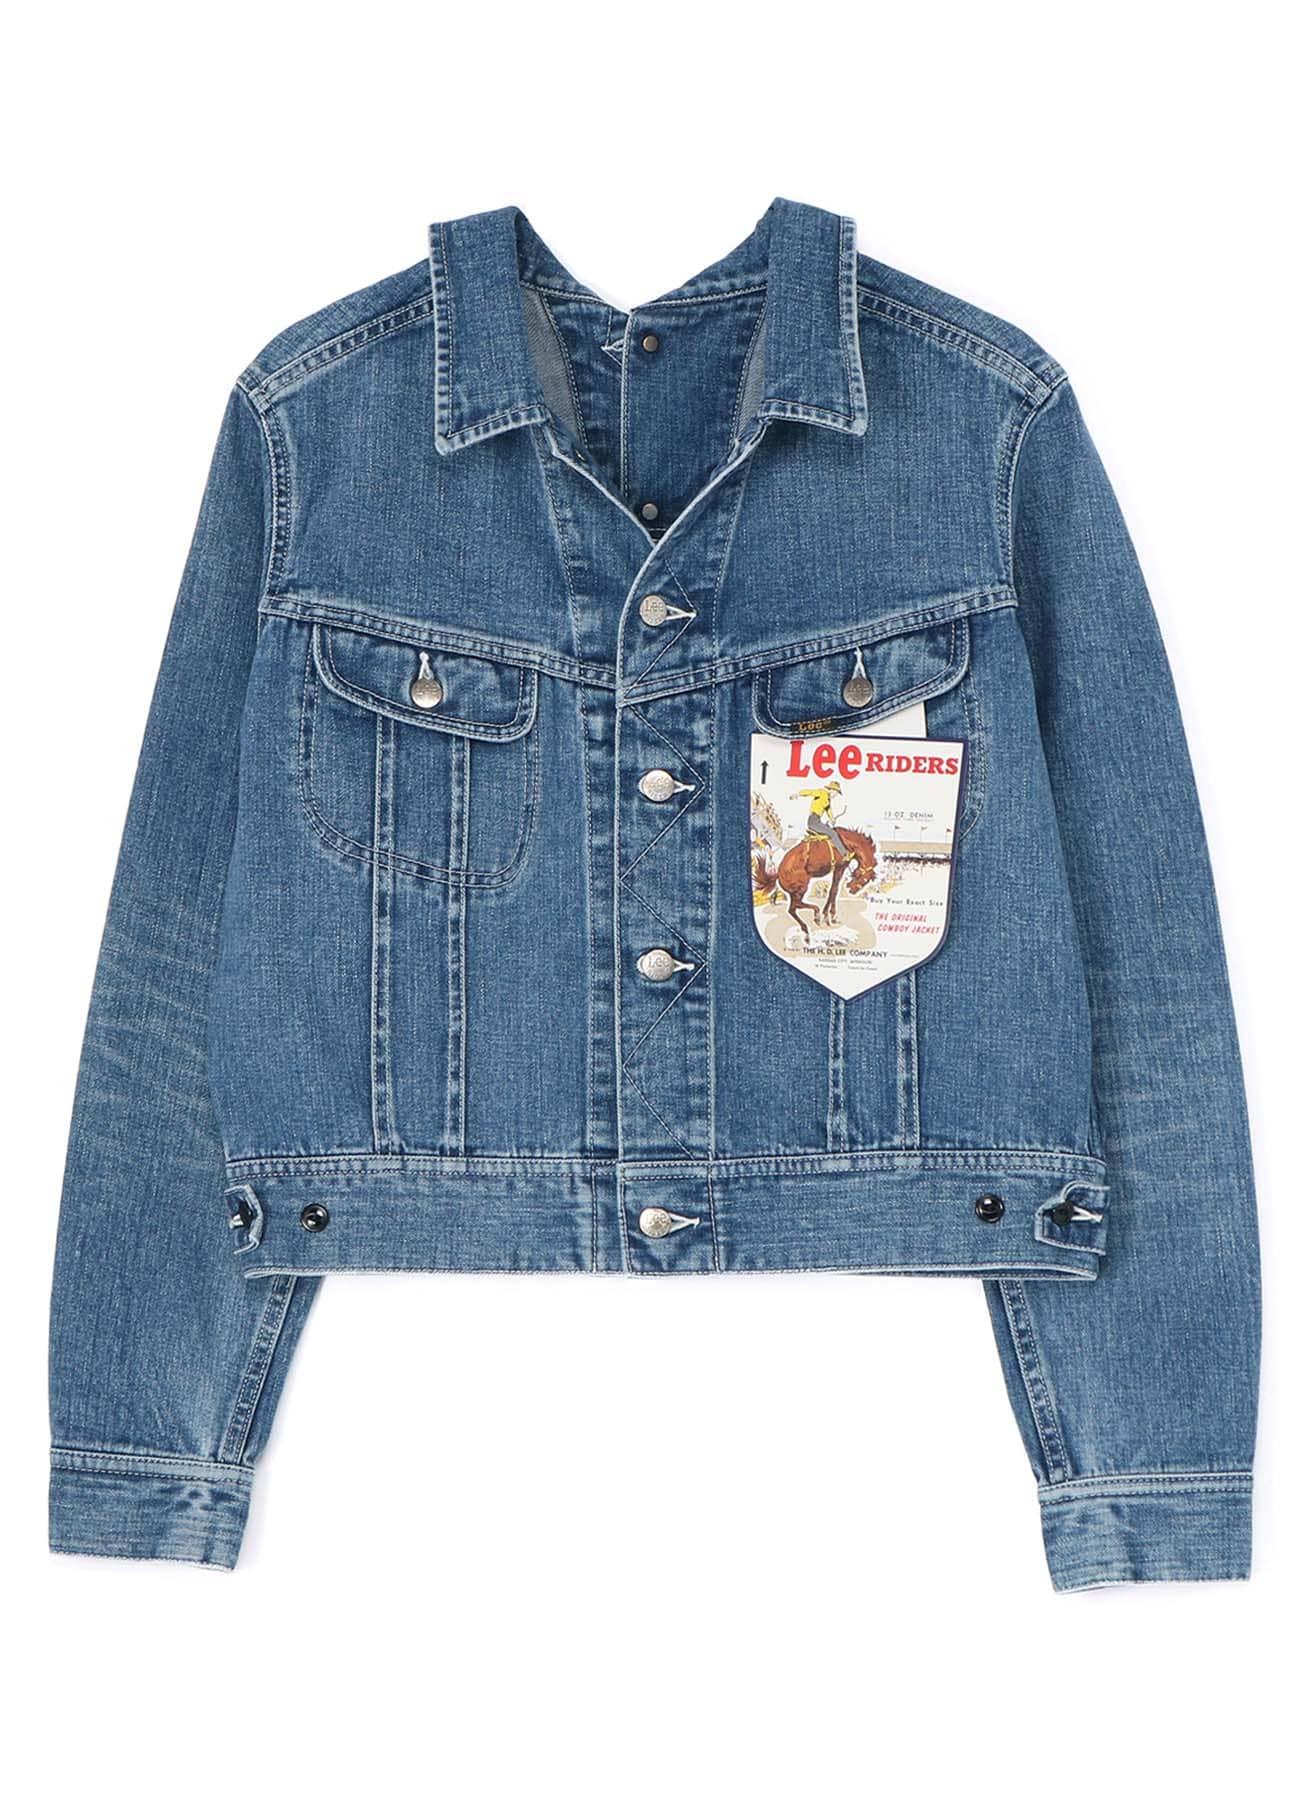 LIMI feu×Lee Reversible Jacket(S Blue): Vintage 1.1｜THE SHOP